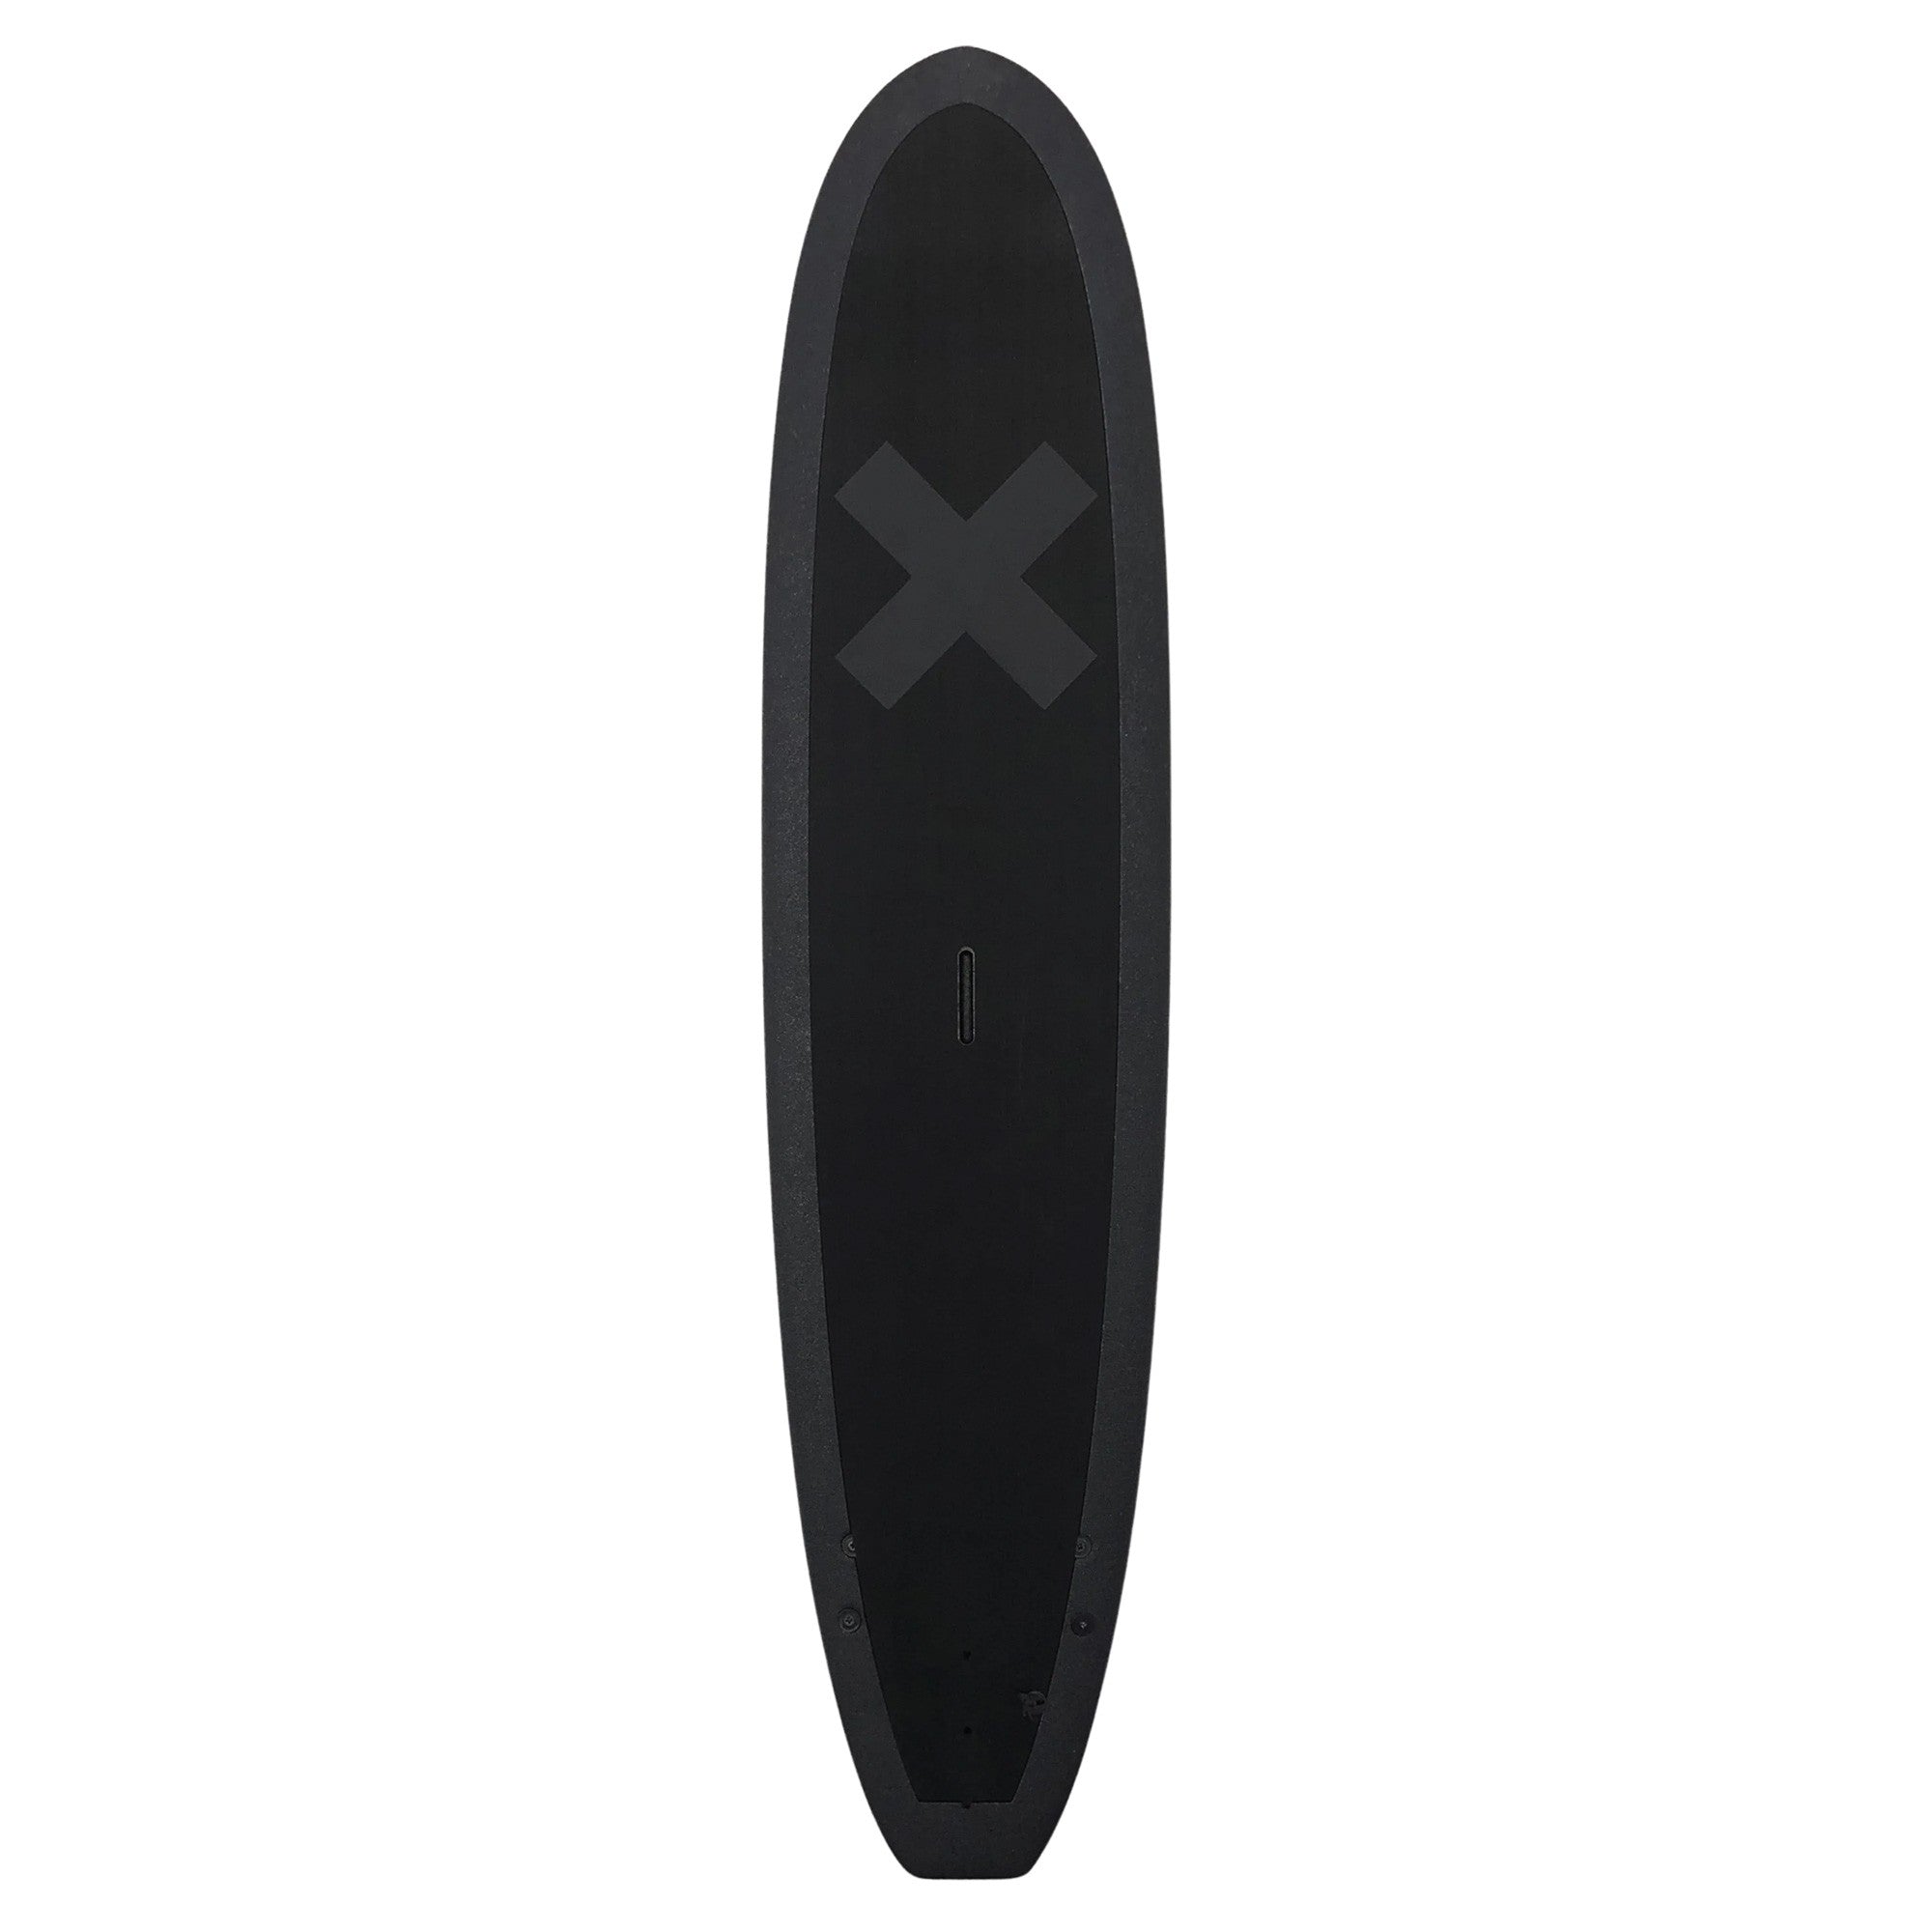 ALBUM Surfboards - Kookalog 7'11 Soft Top - Blackout